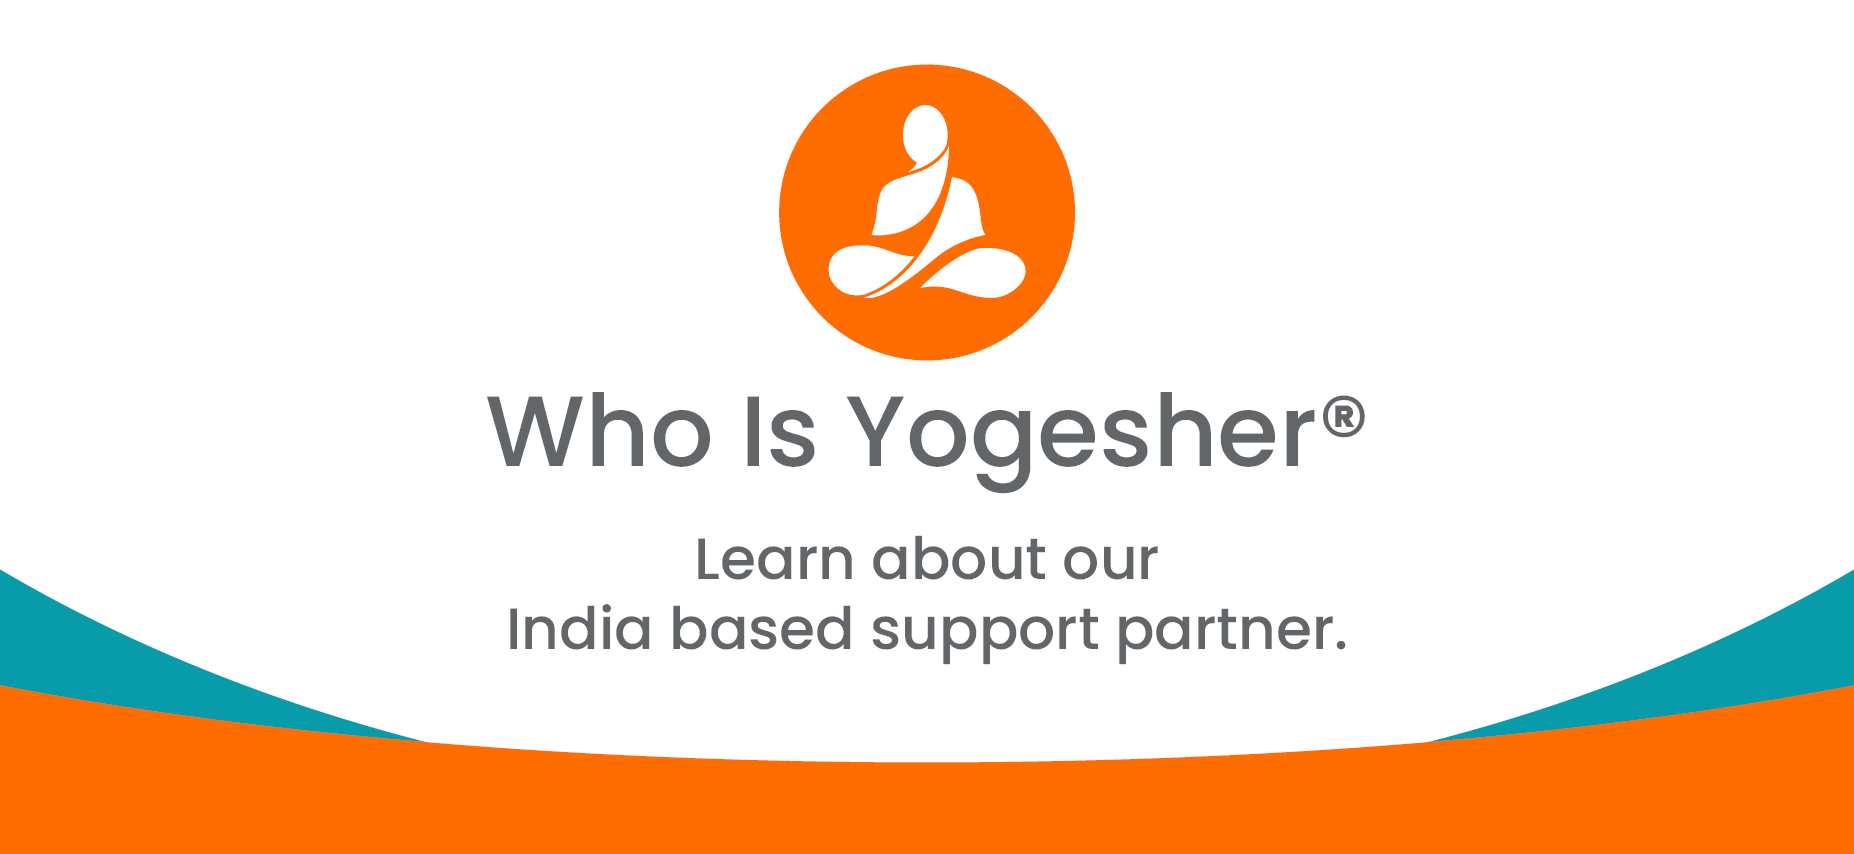 Who is Yogesher